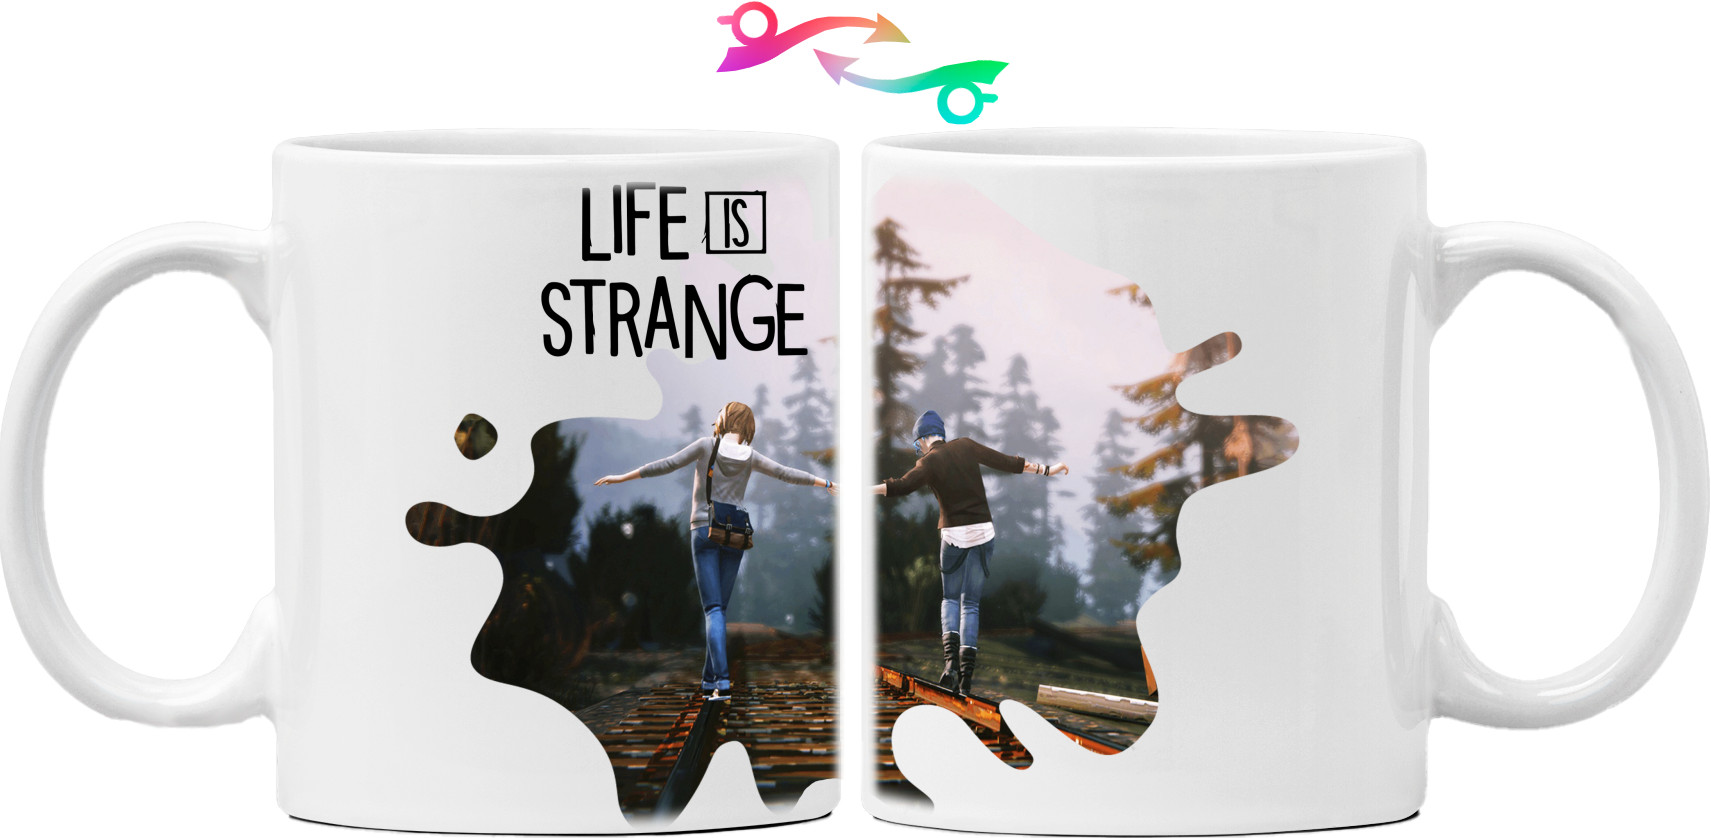 Life Is Strange 2